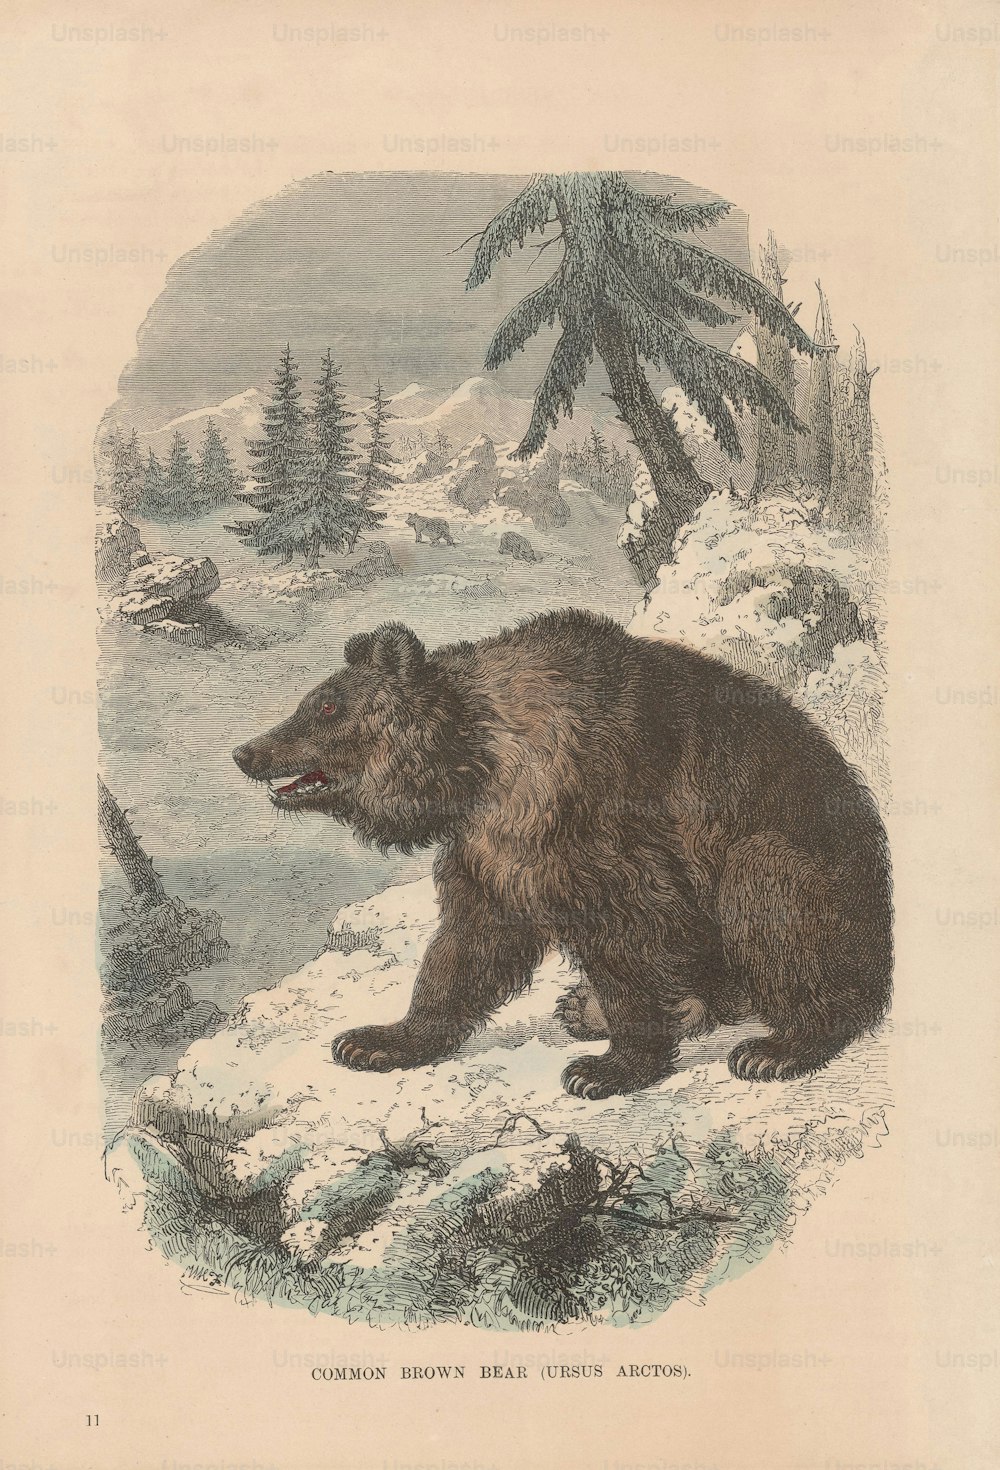 Un Ursus Arctos ou ours brun, vers 1800. (Photo de Hulton Archive/Getty Images)